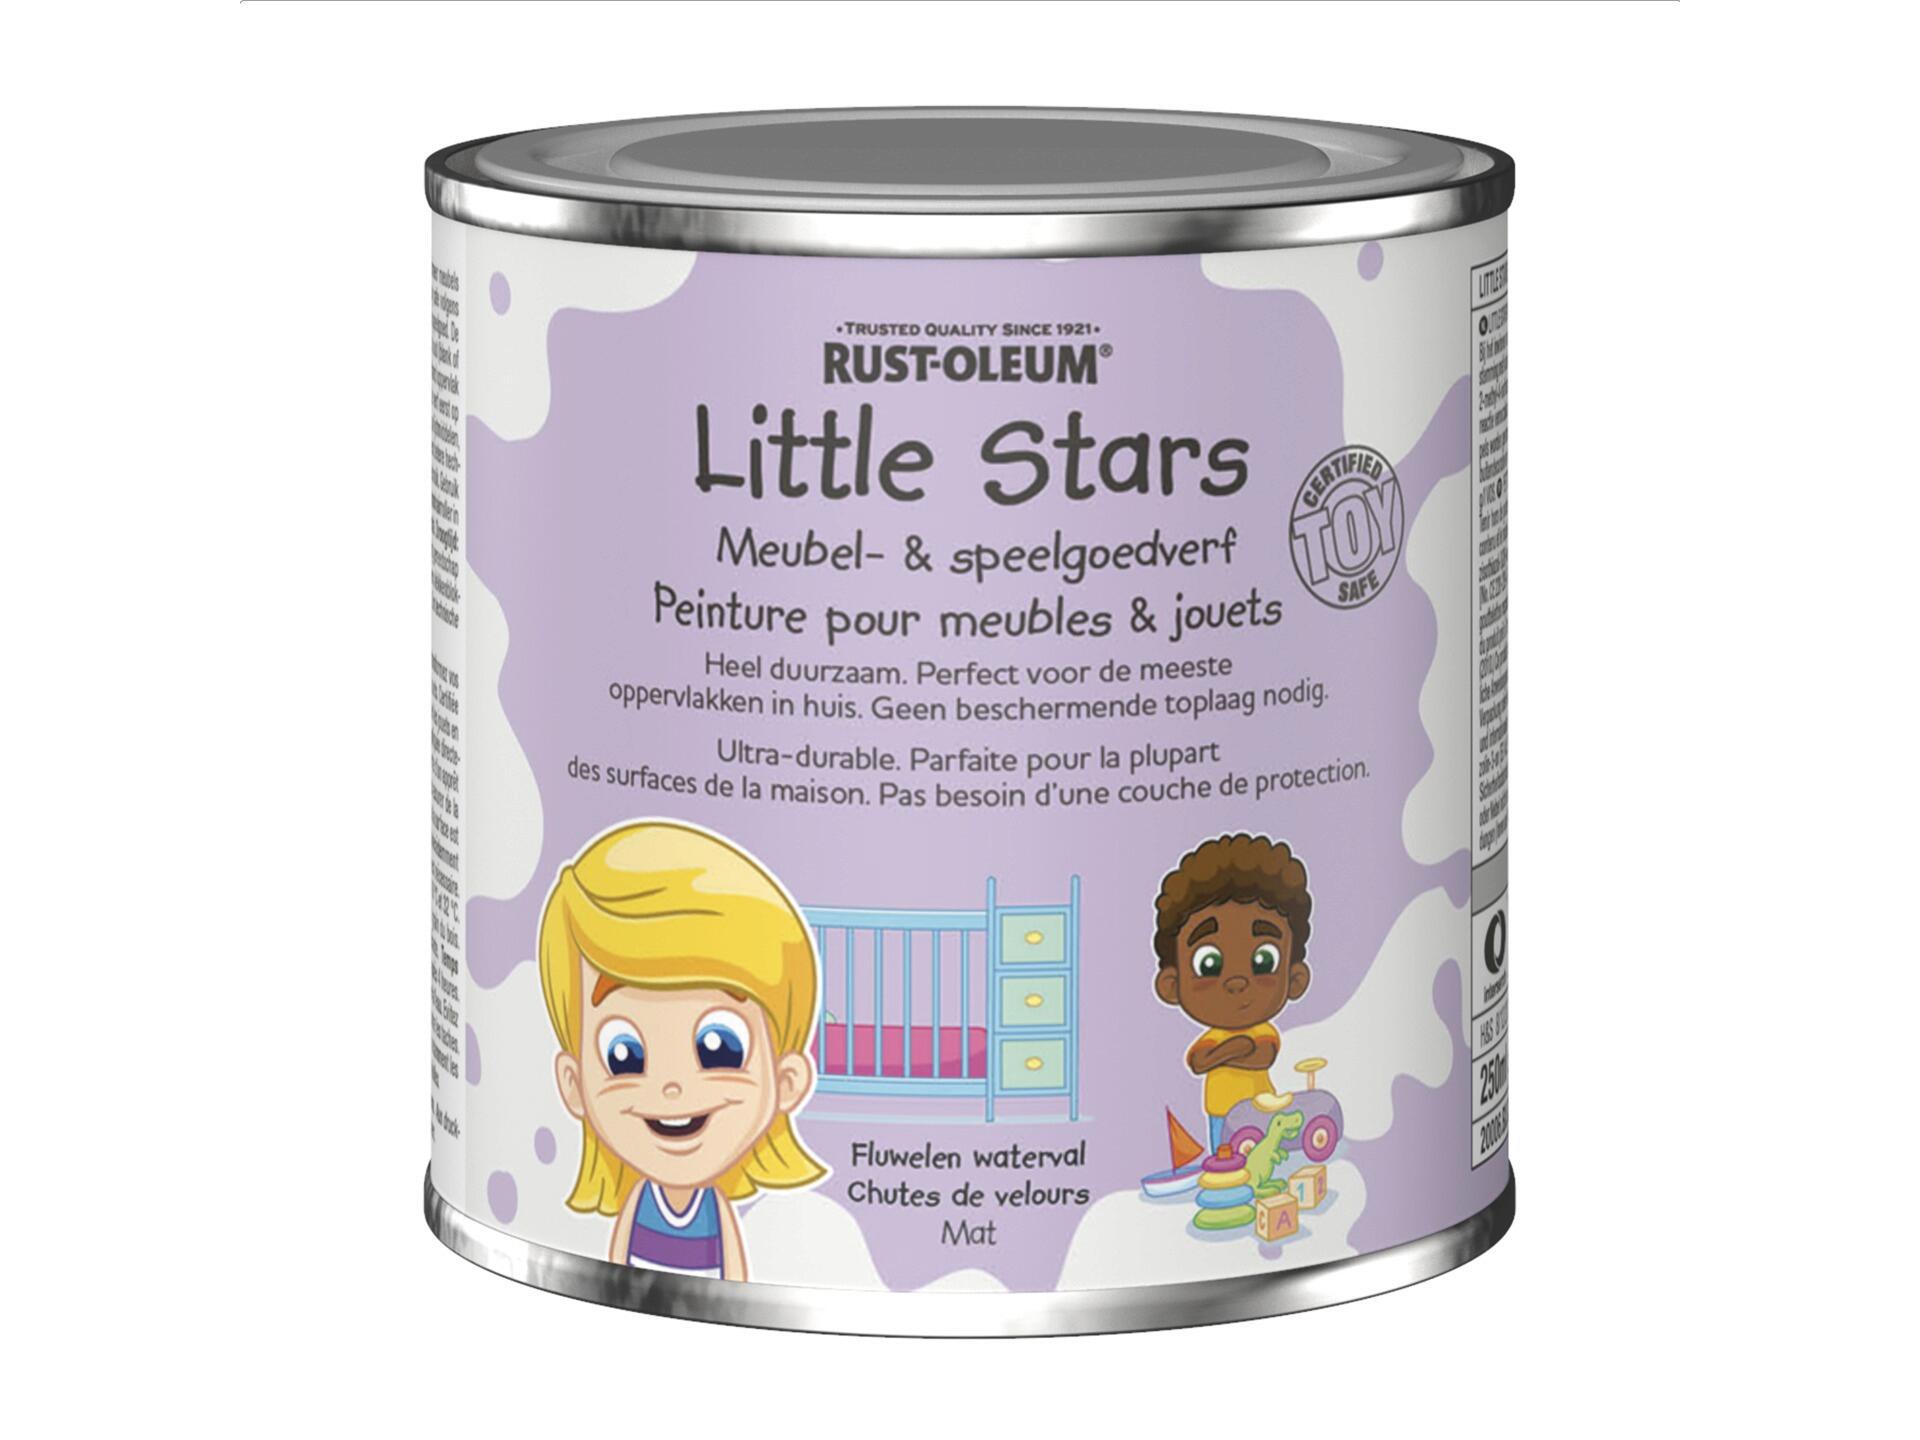 Rust-oleum Little Stars peinture pour meubles et jouets 250ml chute de velours